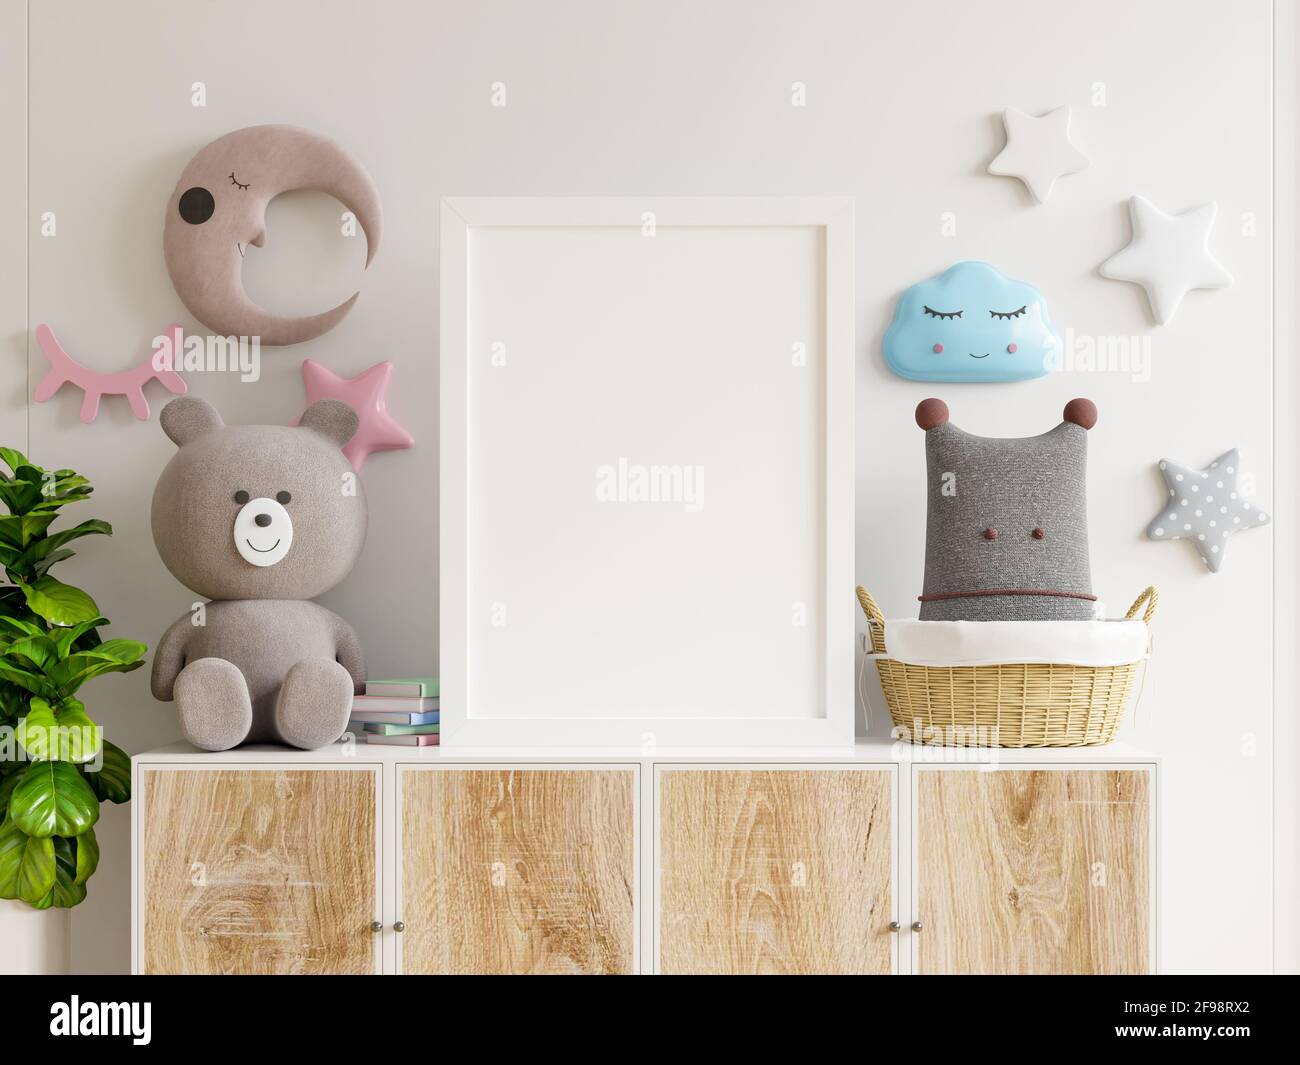 Affiches de maquette dans l'intérieur de la chambre d'enfant, affiches sur armoire en bois, rendu 3D Banque D'Images